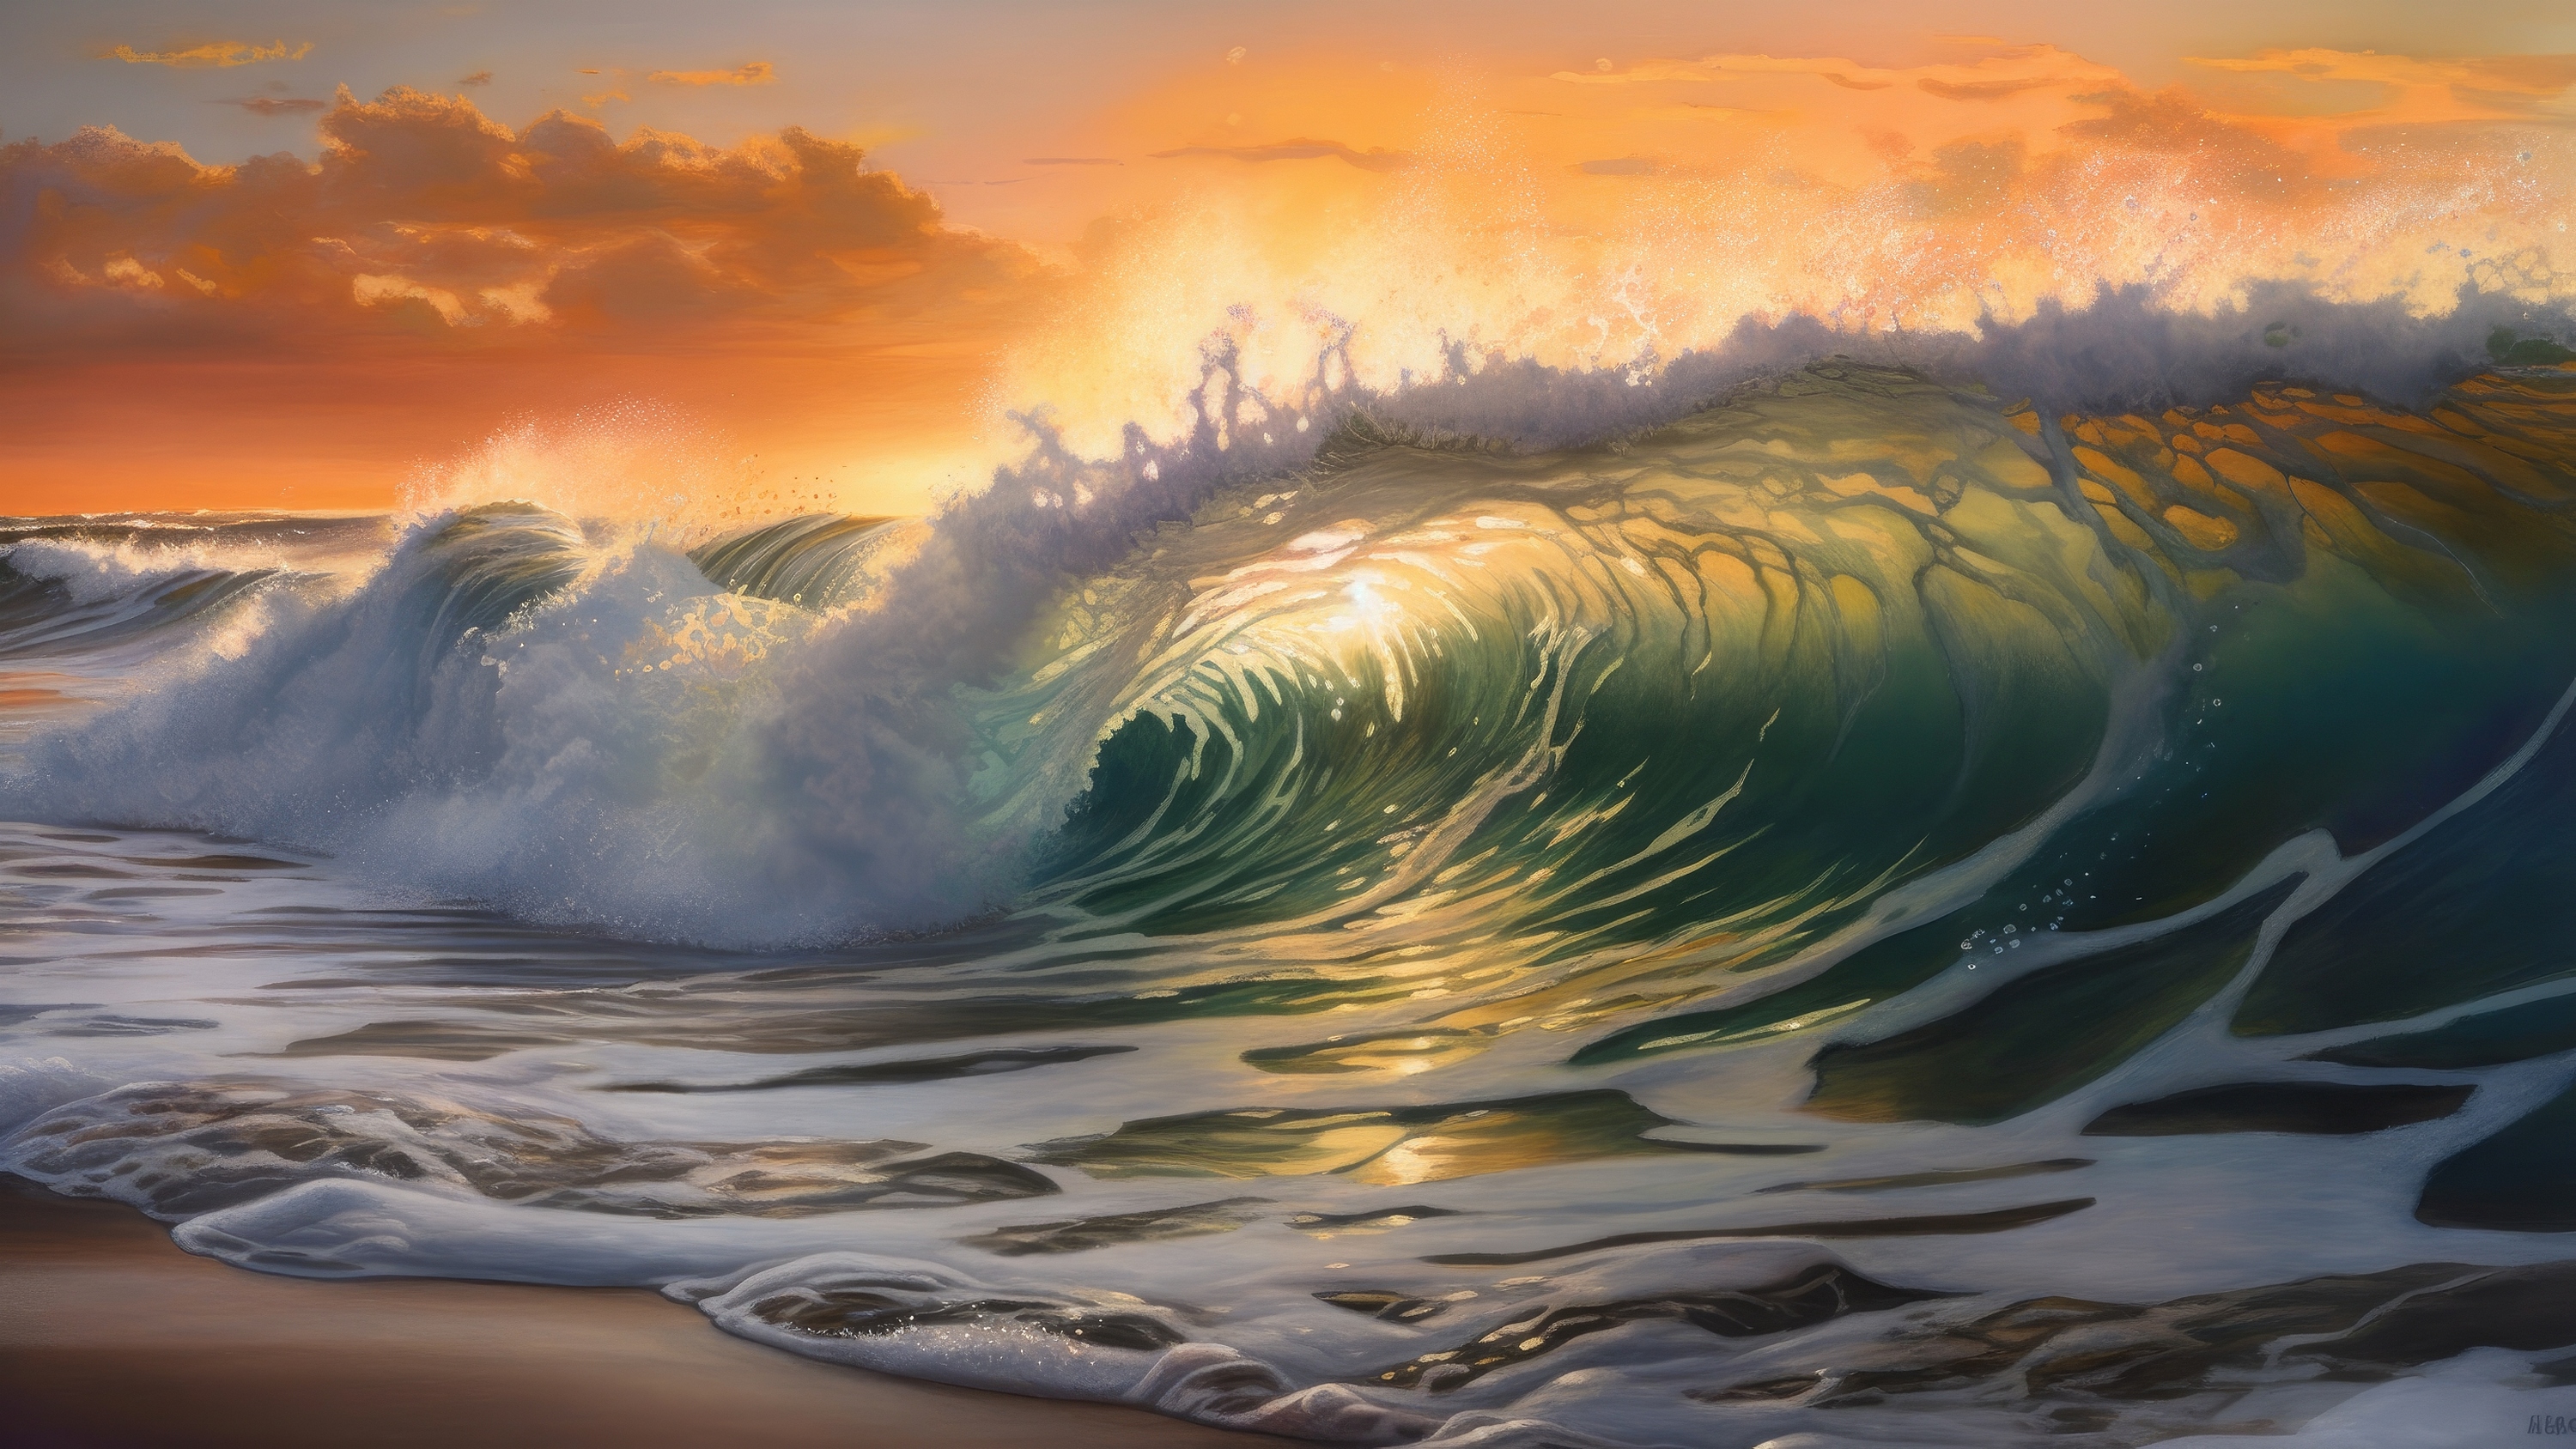 A fantasy sea wave at sunset